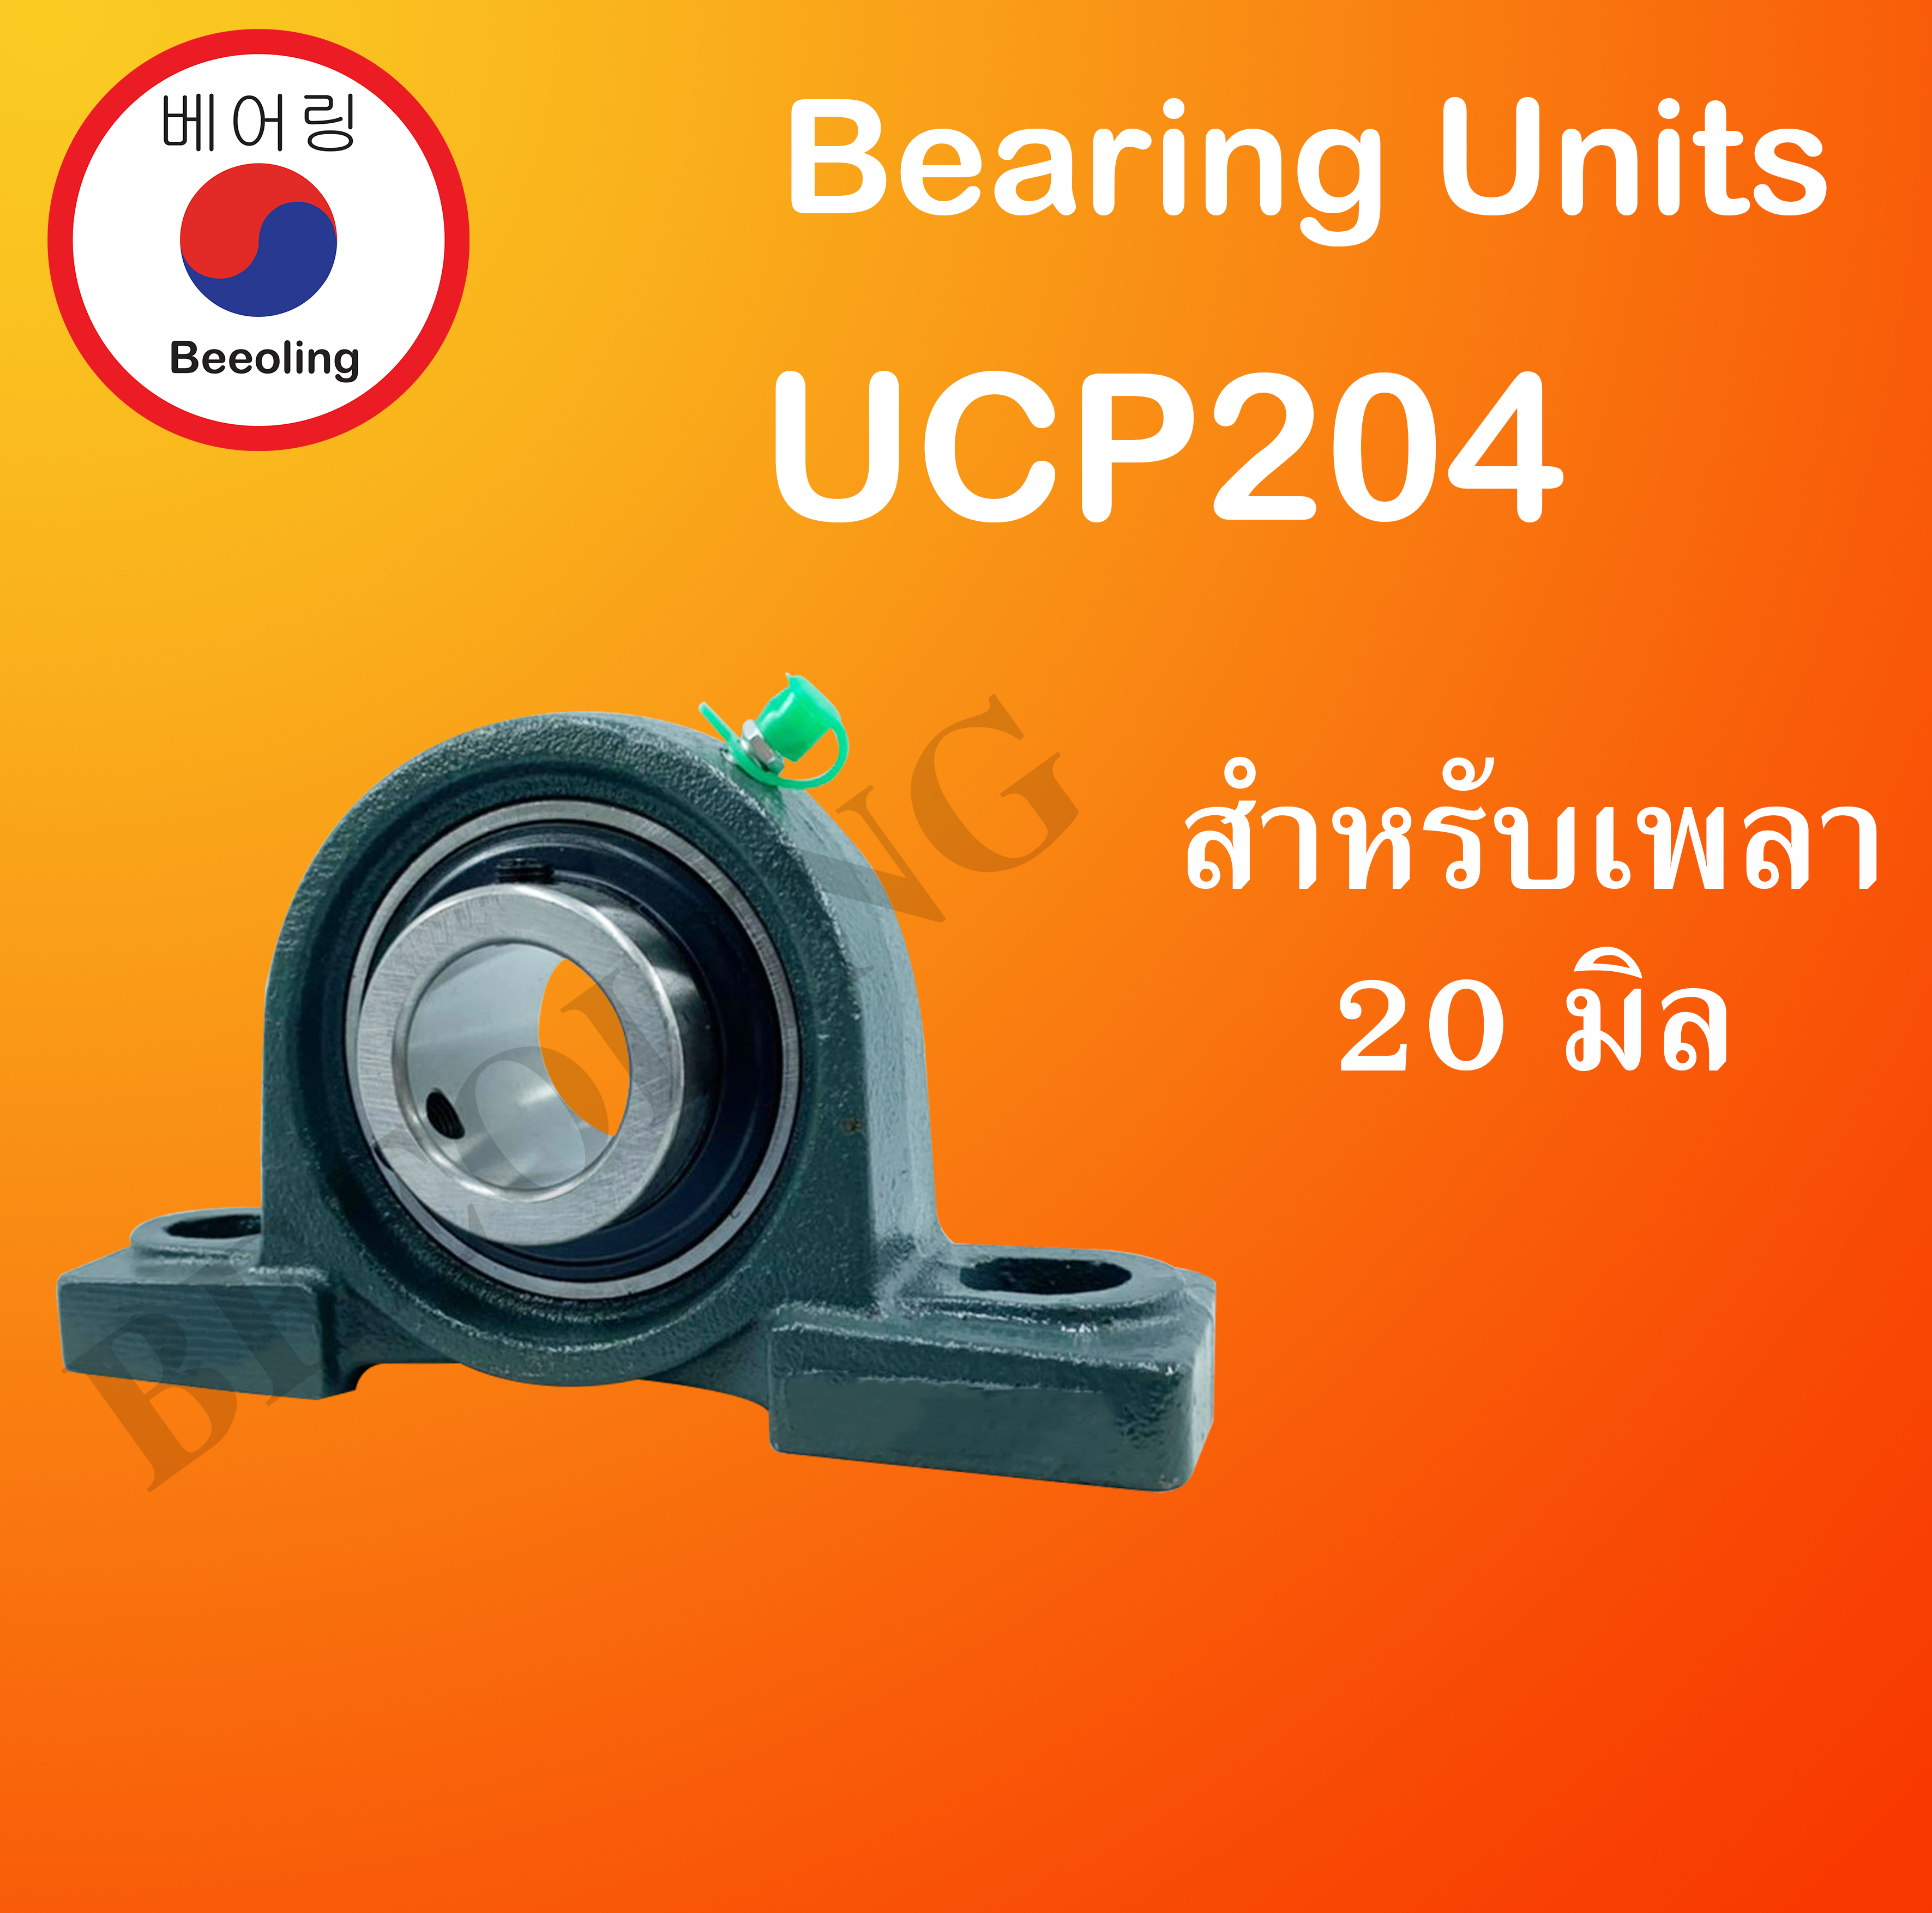 UCP204 ตลับลูกปืนตุ๊กตา BEARING UNITS สำหรับเพลา  20 มม. UCP 204 โดย Beeoling shop